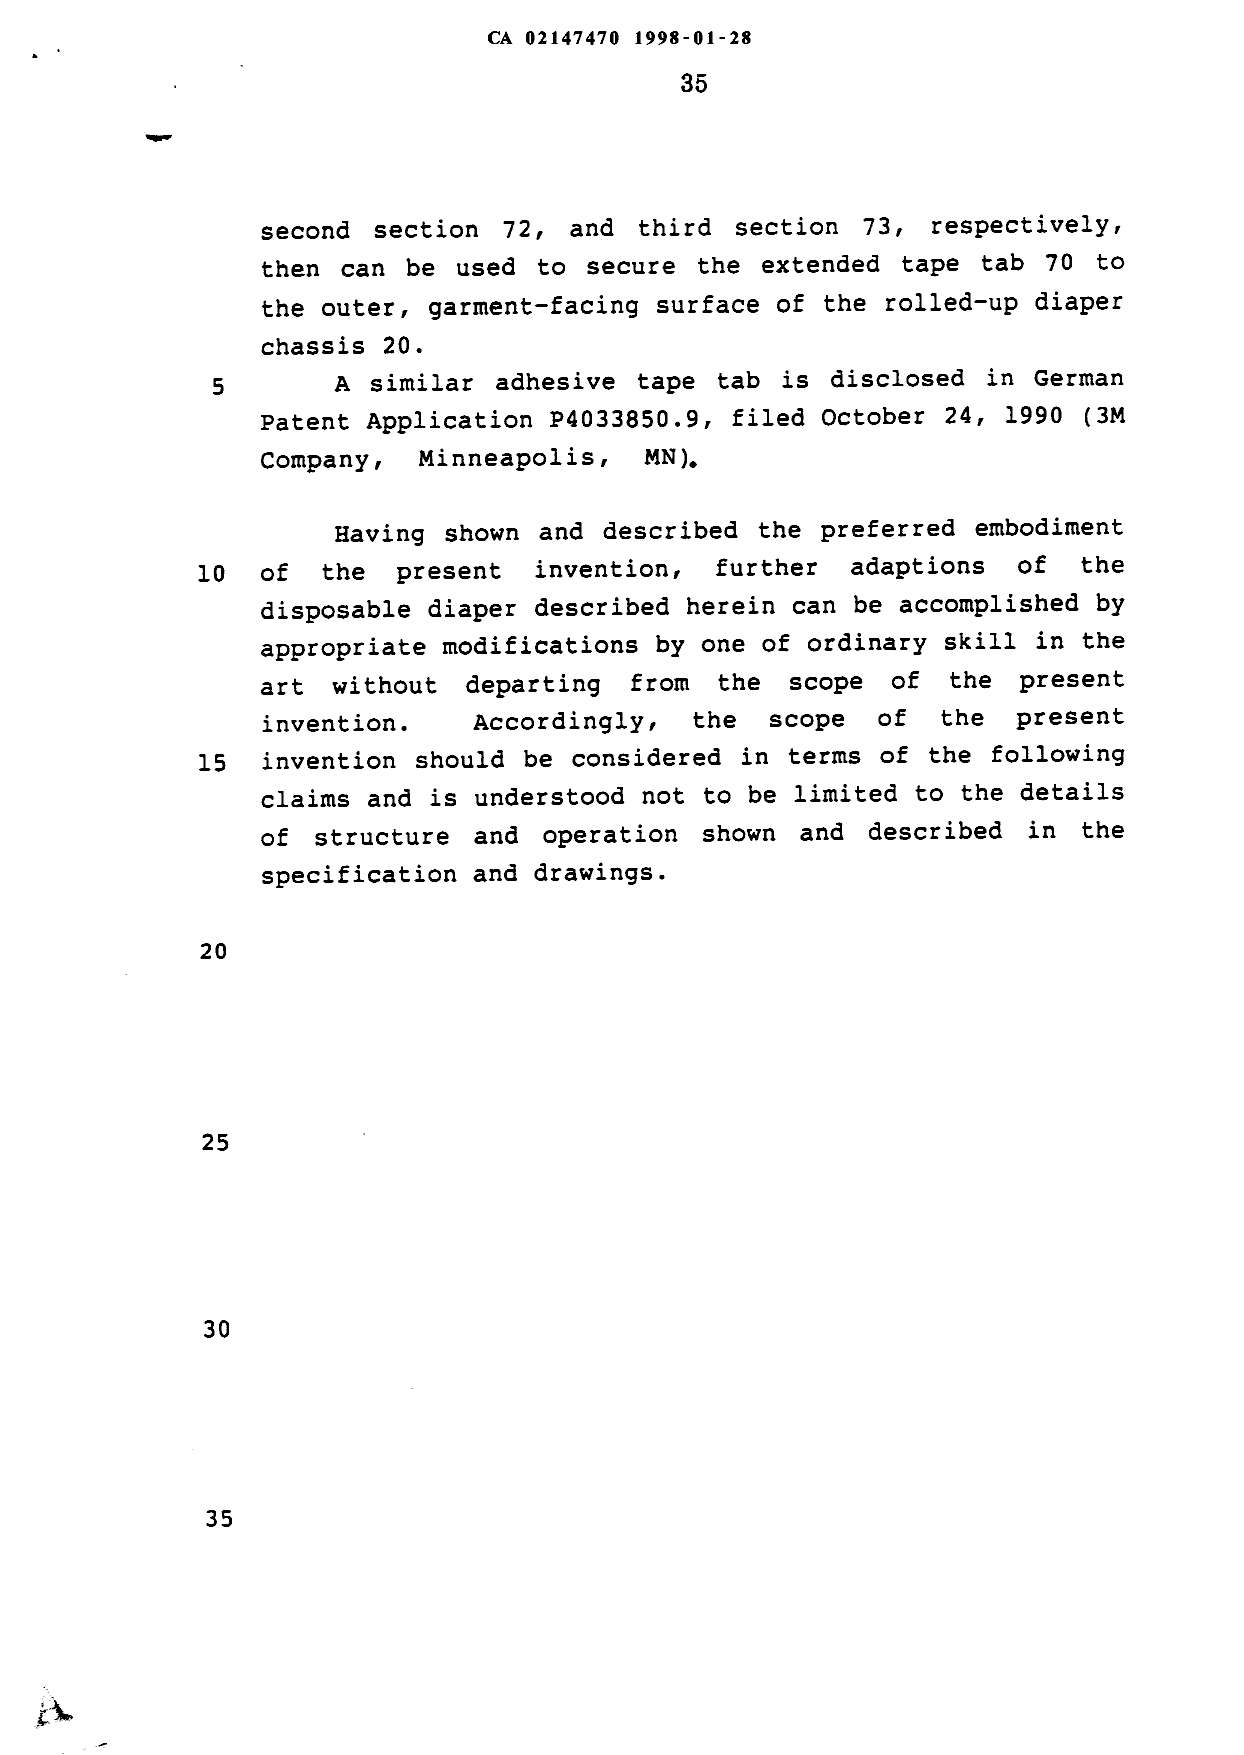 Canadian Patent Document 2147470. Description 19980128. Image 35 of 35